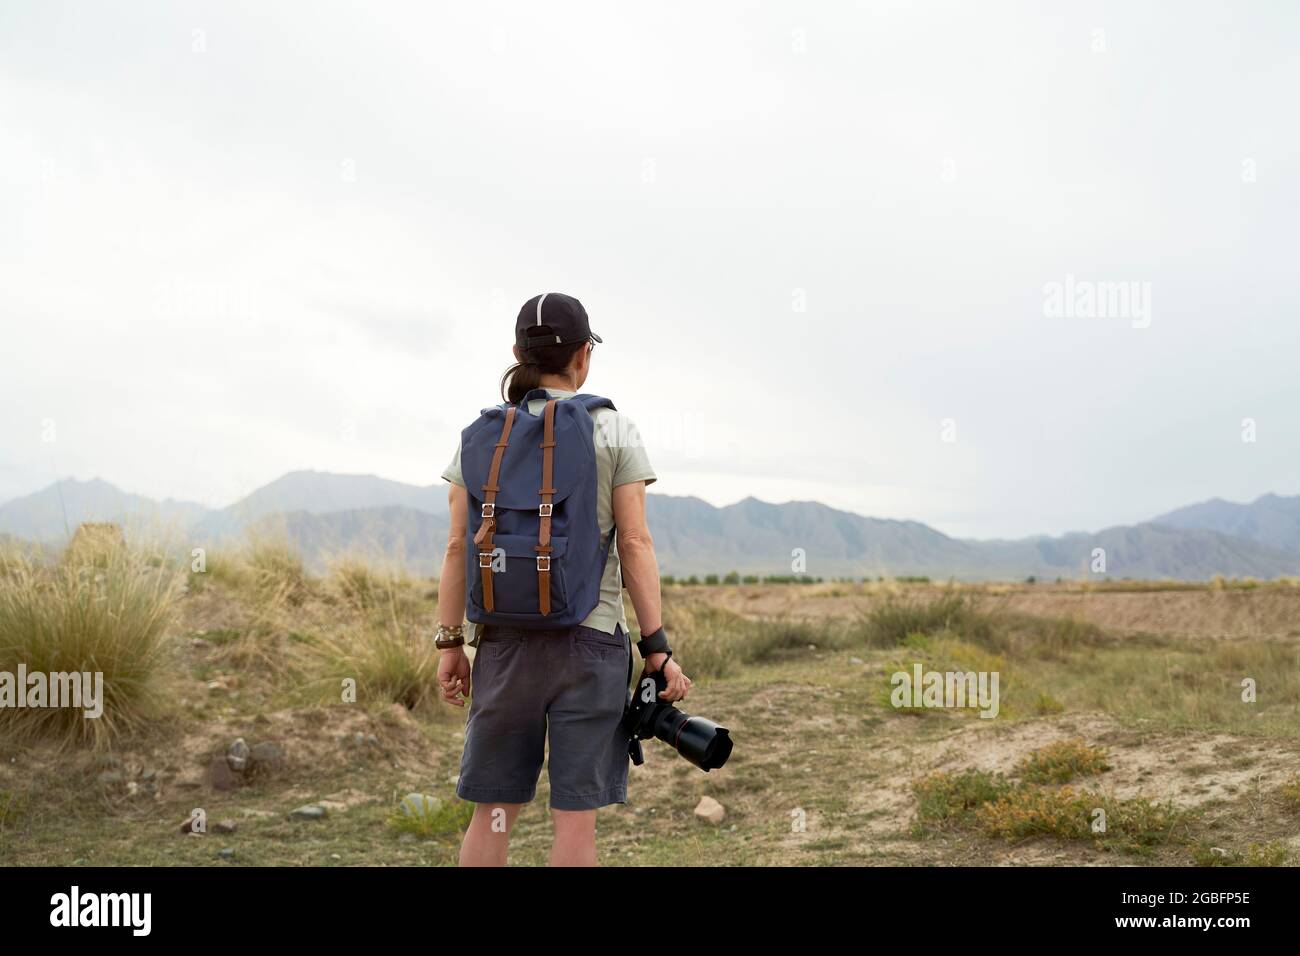 Rückansicht eines asiatischen Fotografen mit Rucksack und Kamera in der Hand Stockfoto